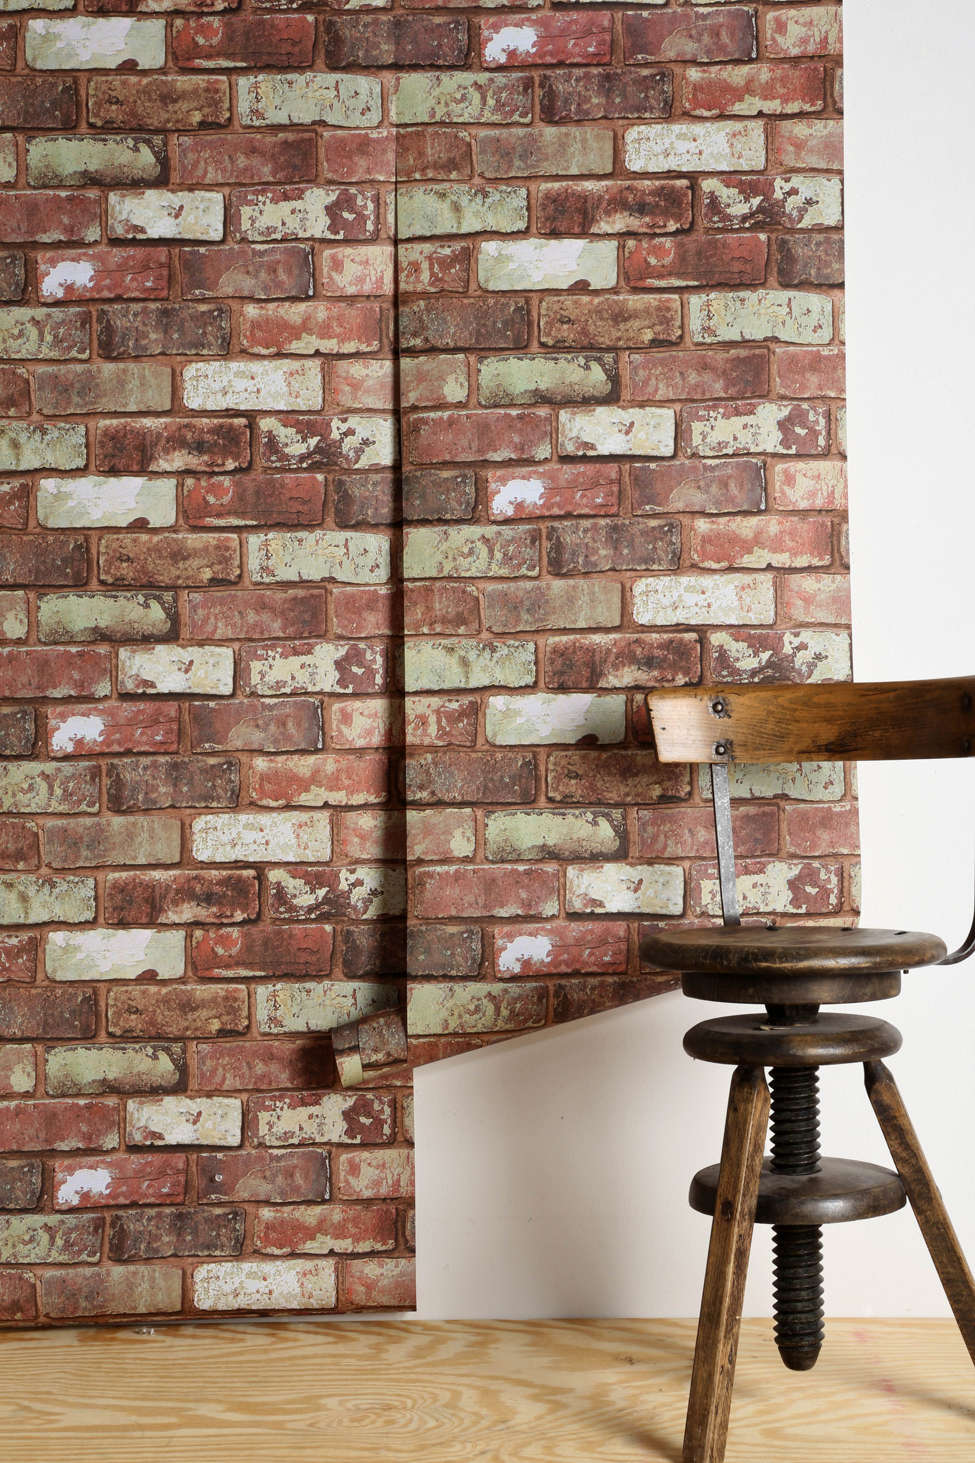 brick wallpaper b&q,brick,brickwork,wall,furniture,stone wall